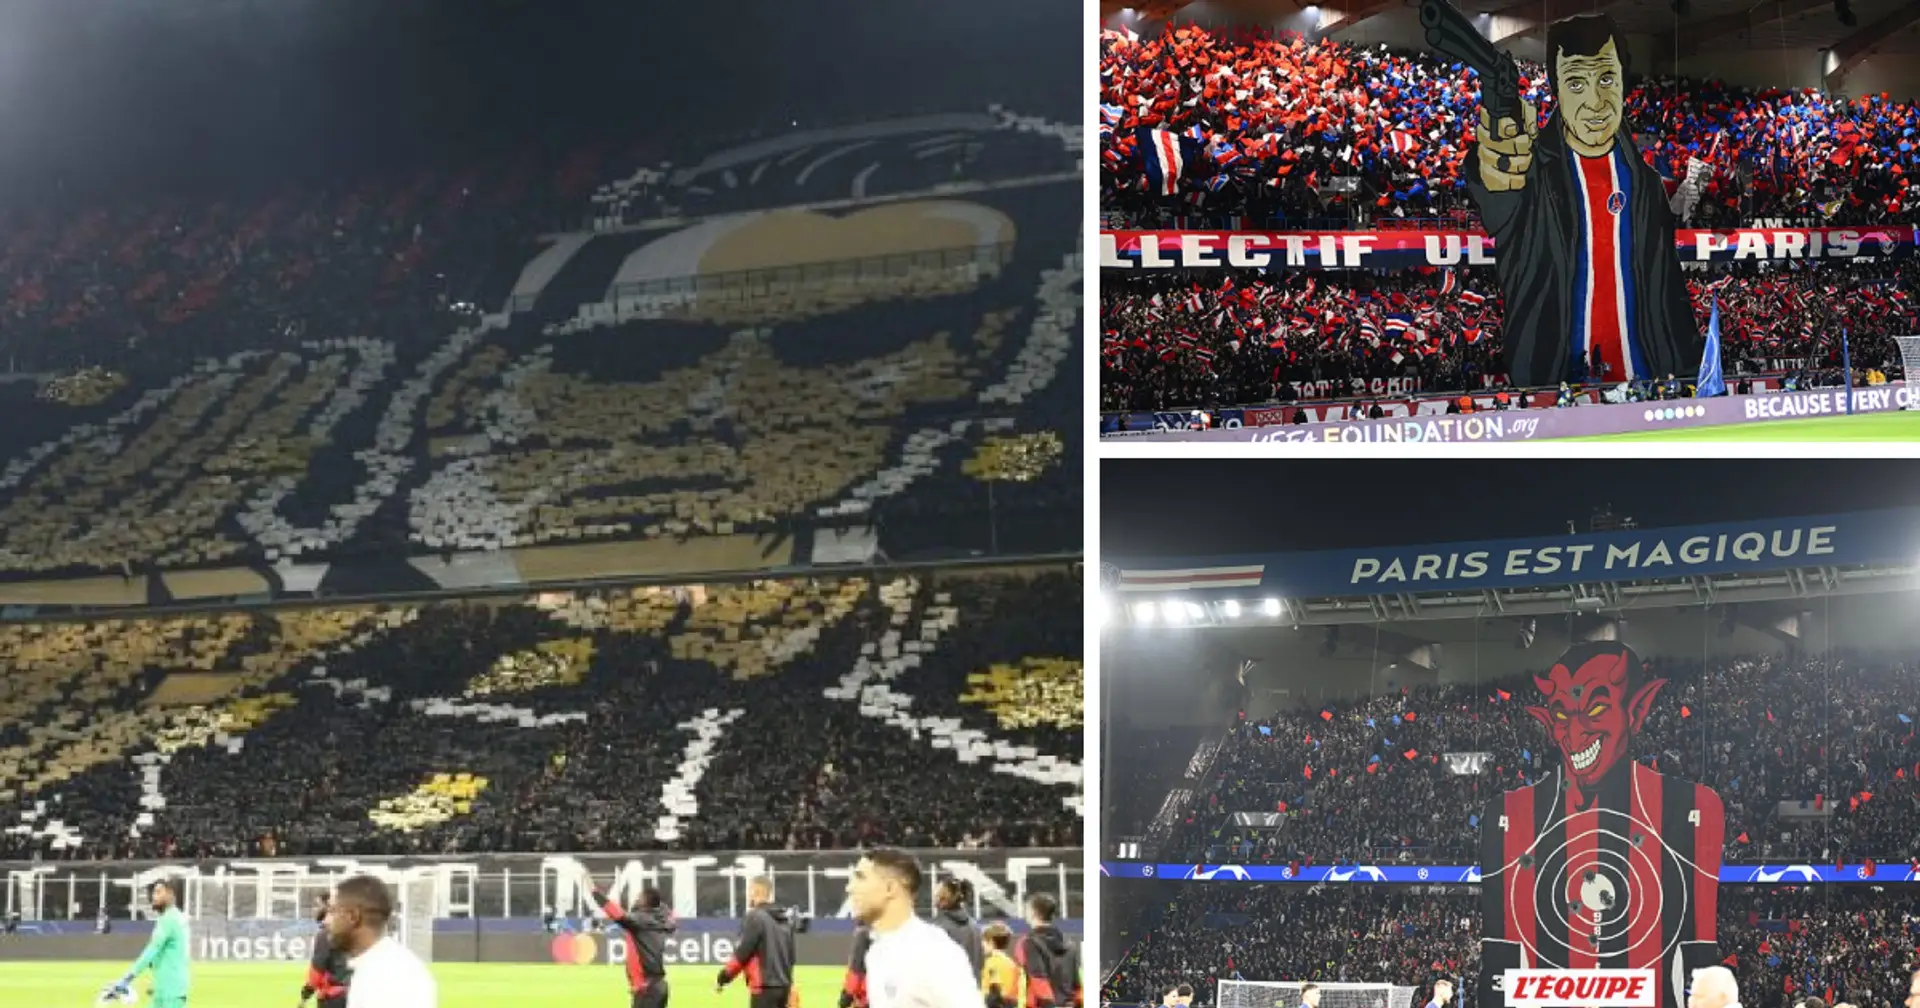 Les supporters de l'AC Milan lancent "Matrix" en réponse au tifo du PSG avant le match de Ligue des Champions